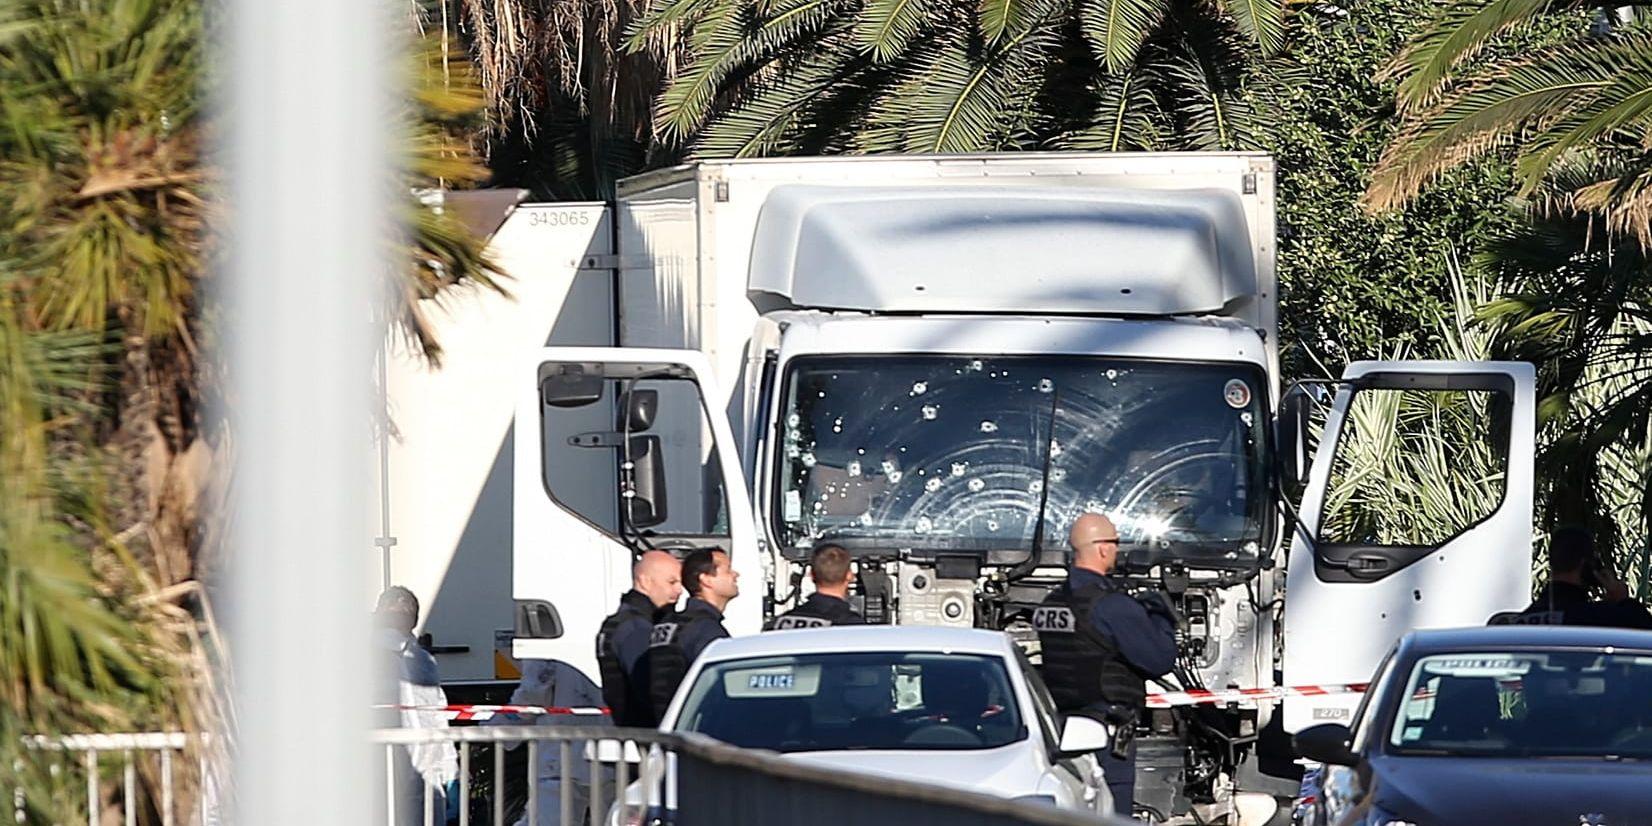 Flera franska medier kommer att sluta publicera bilder på terrorister för att förhindra glorifiering av dem. Detta sker efter attentaten i Nice och Normandie.